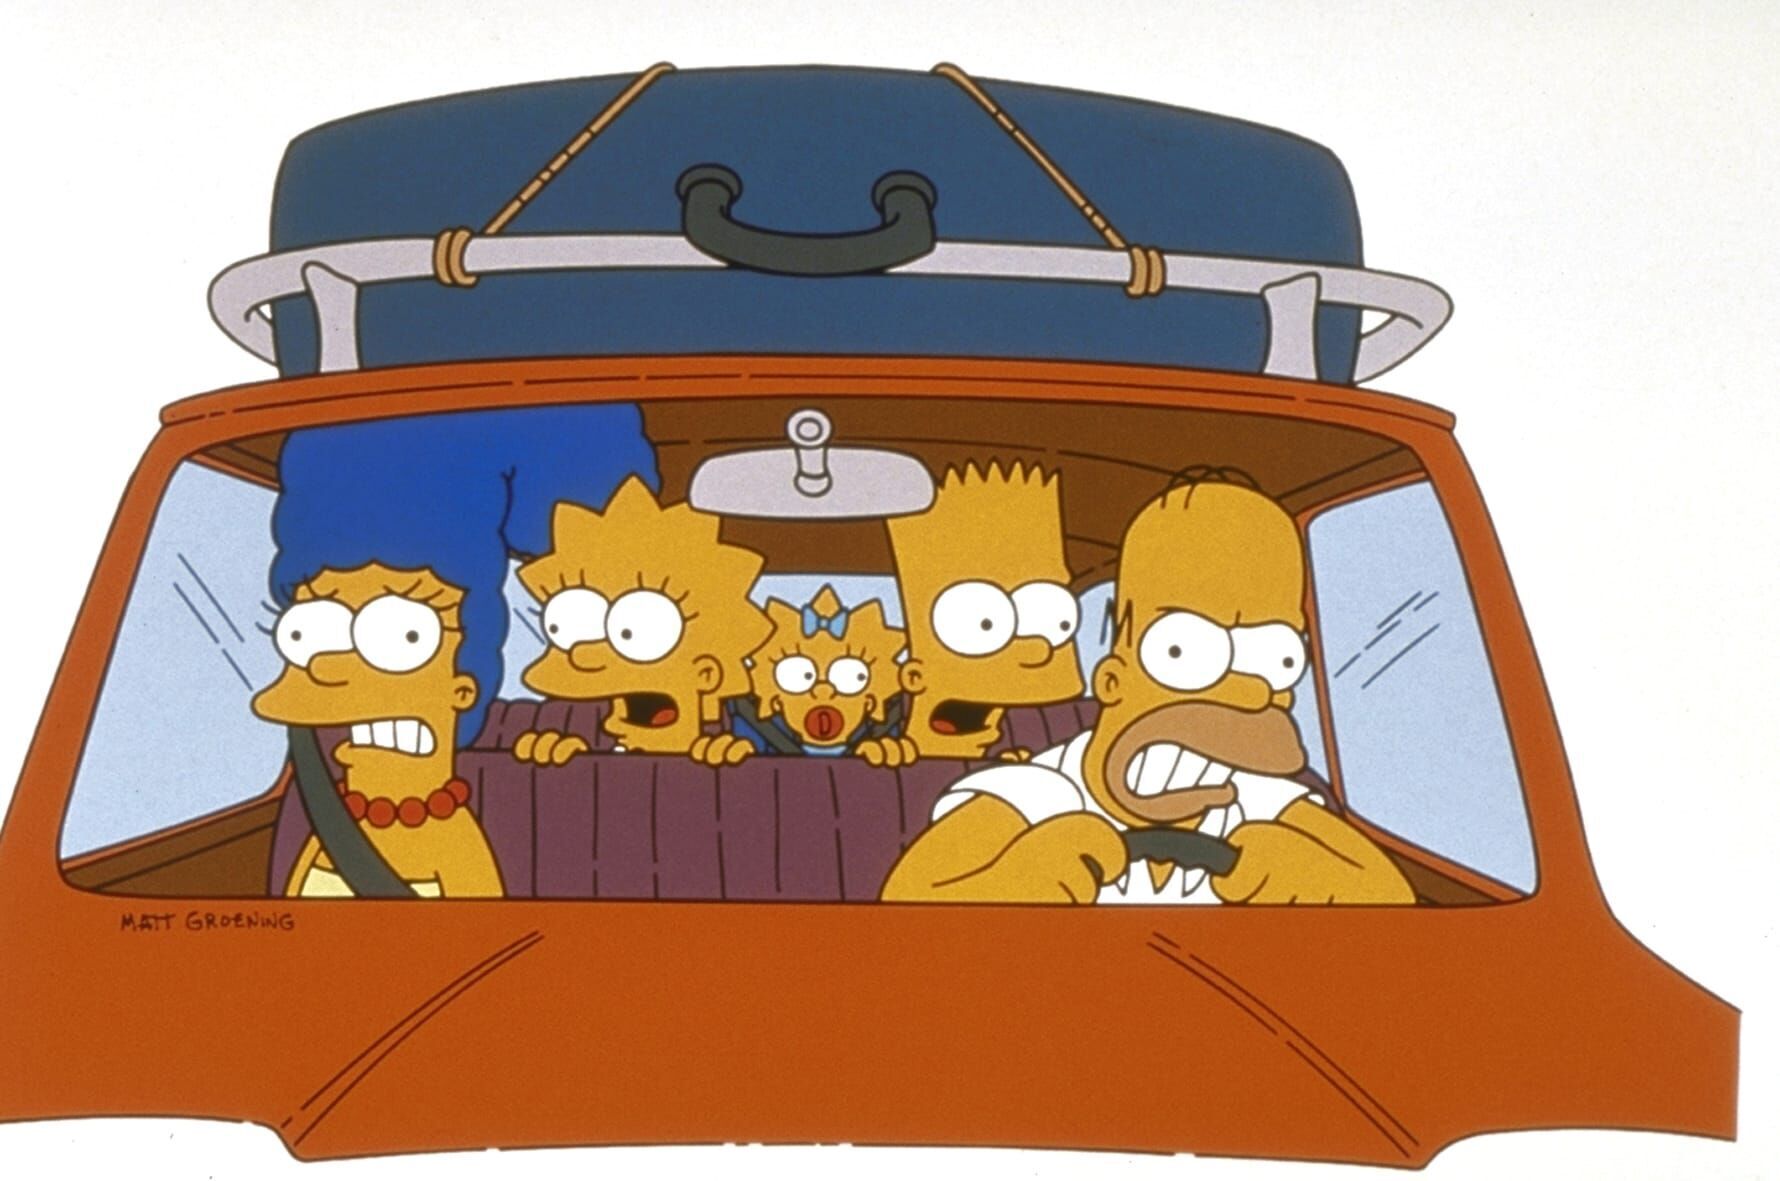 The Simpsons - The Last Temptation of Krust